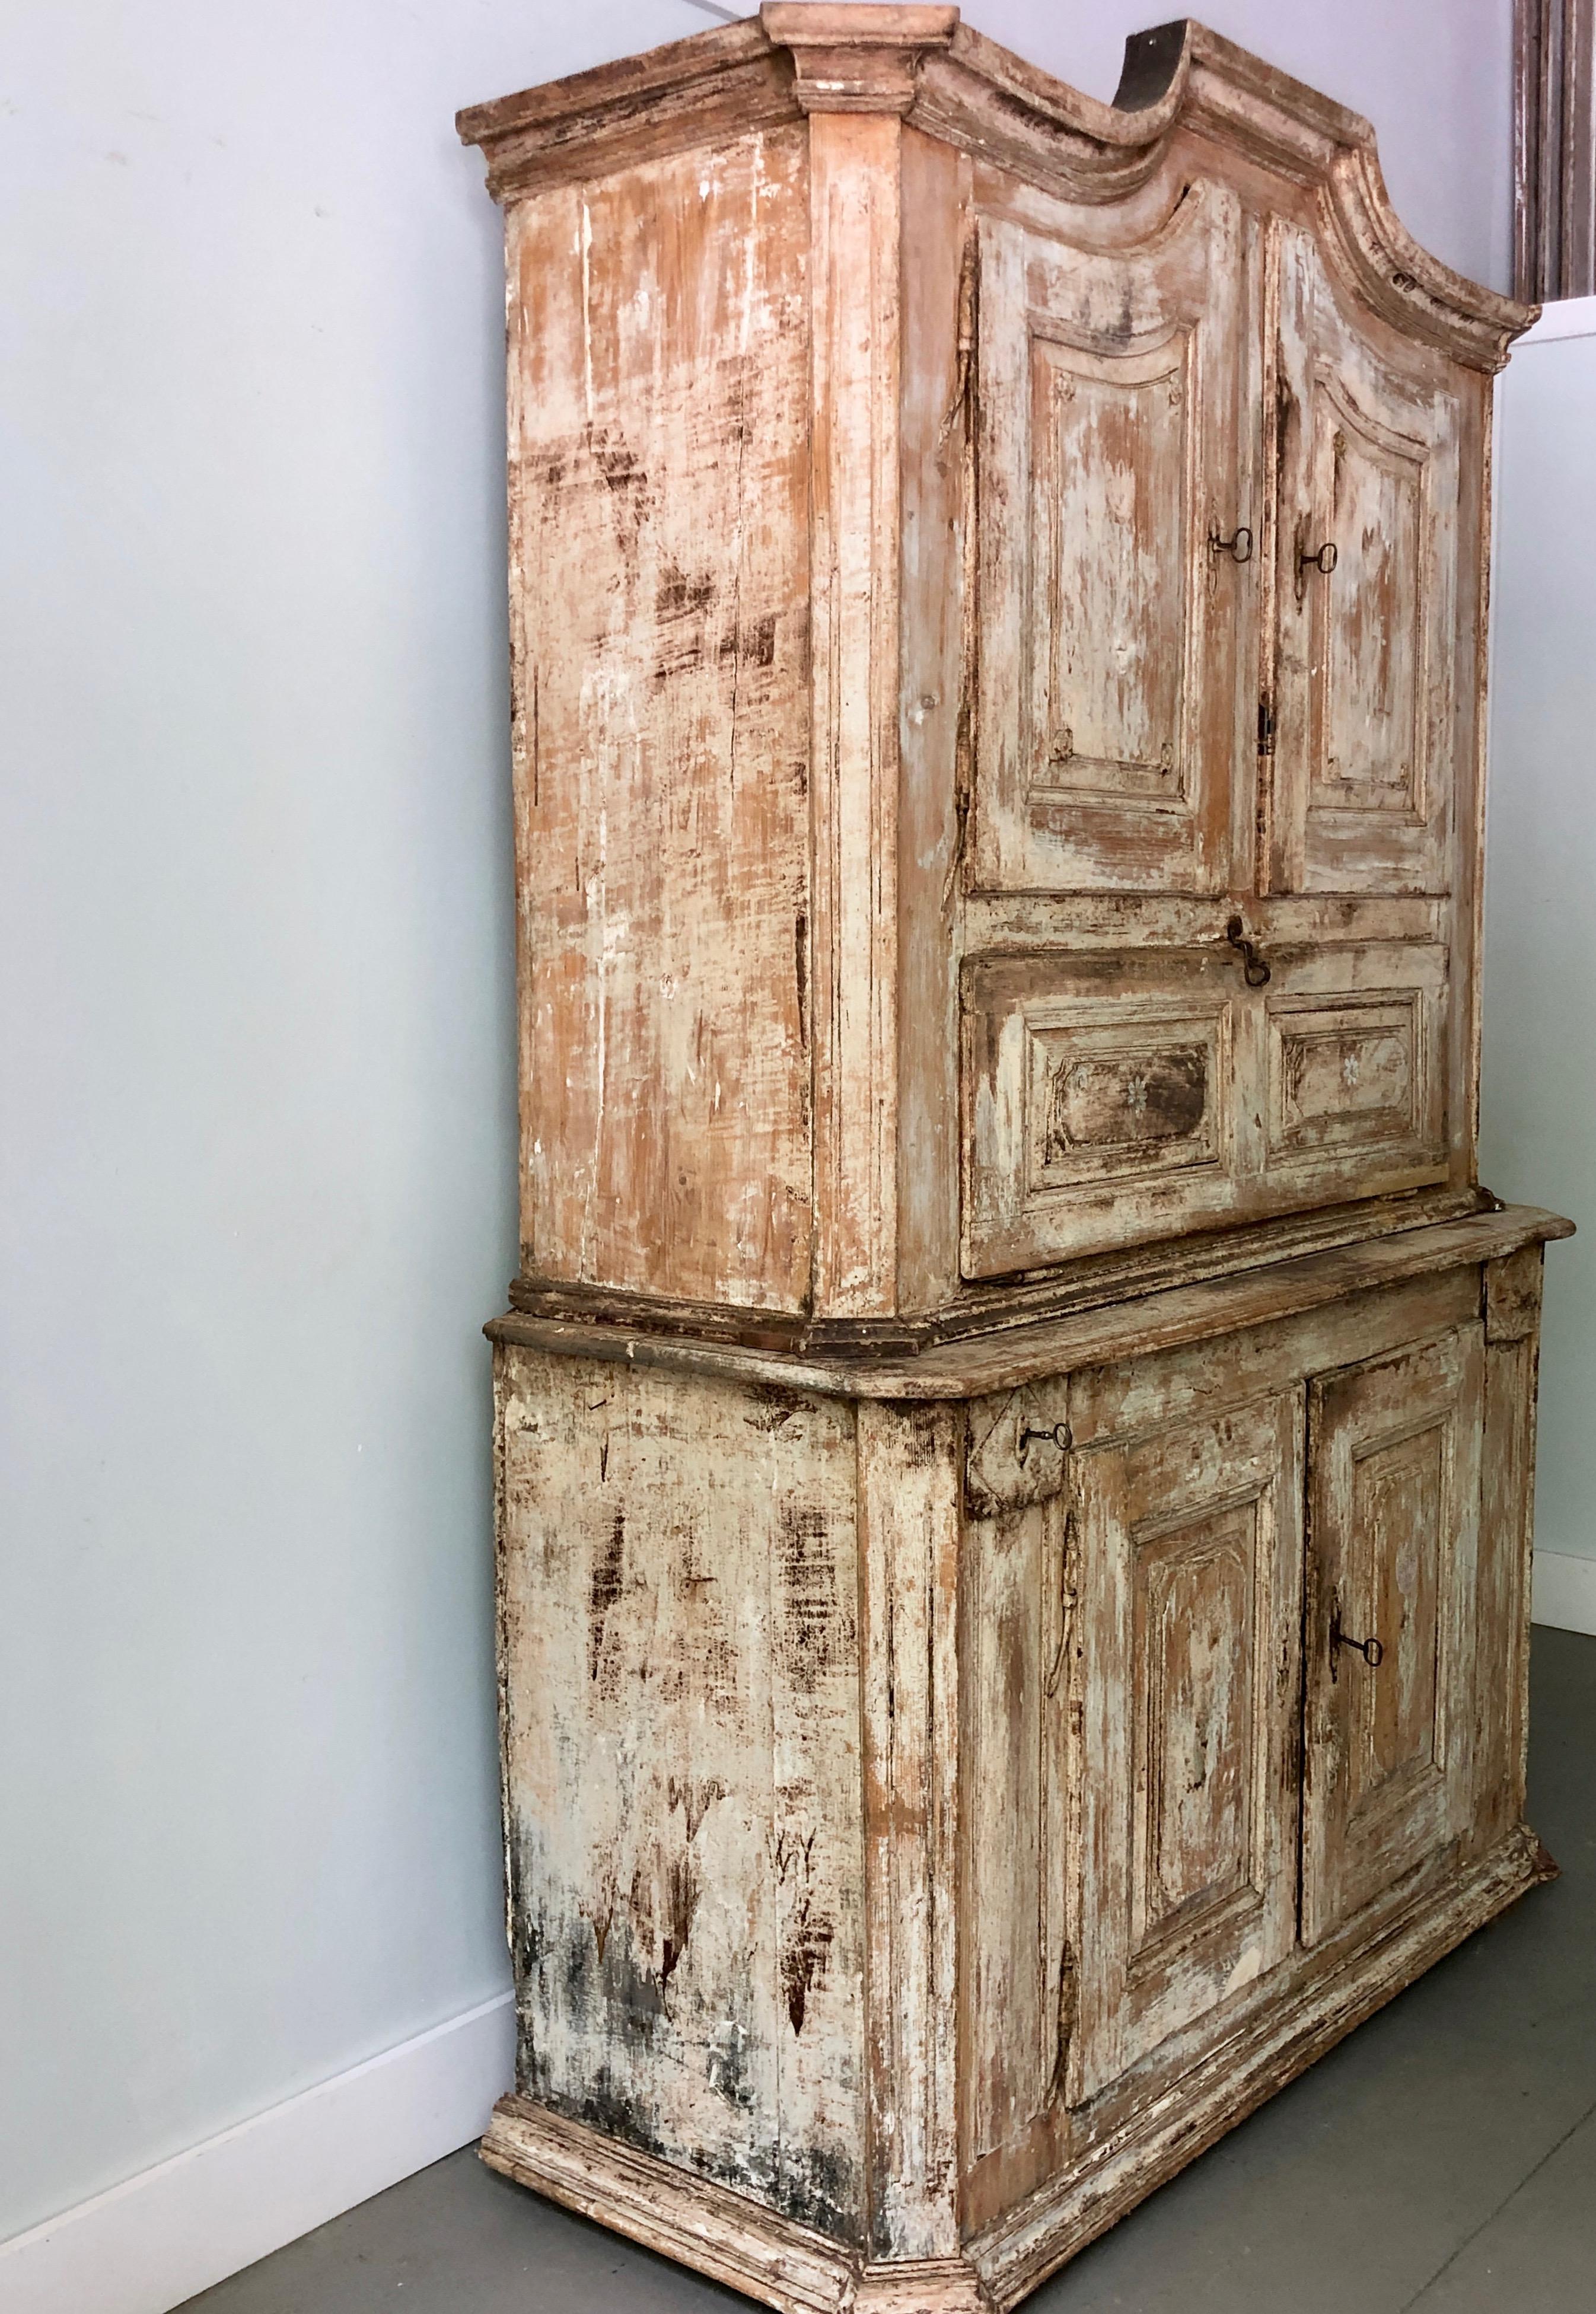 Sehr ungewöhnlicher zweiteiliger Schrank des 18. Jahrhunderts aus dem Elsass, Frankreich, um 1760.
Türen mit reichlich geschnitzten Paneelen und einigen Rosetten. Trocken geschrubbt, um seine ursprünglichen Oberflächen, Spuren von charmanten